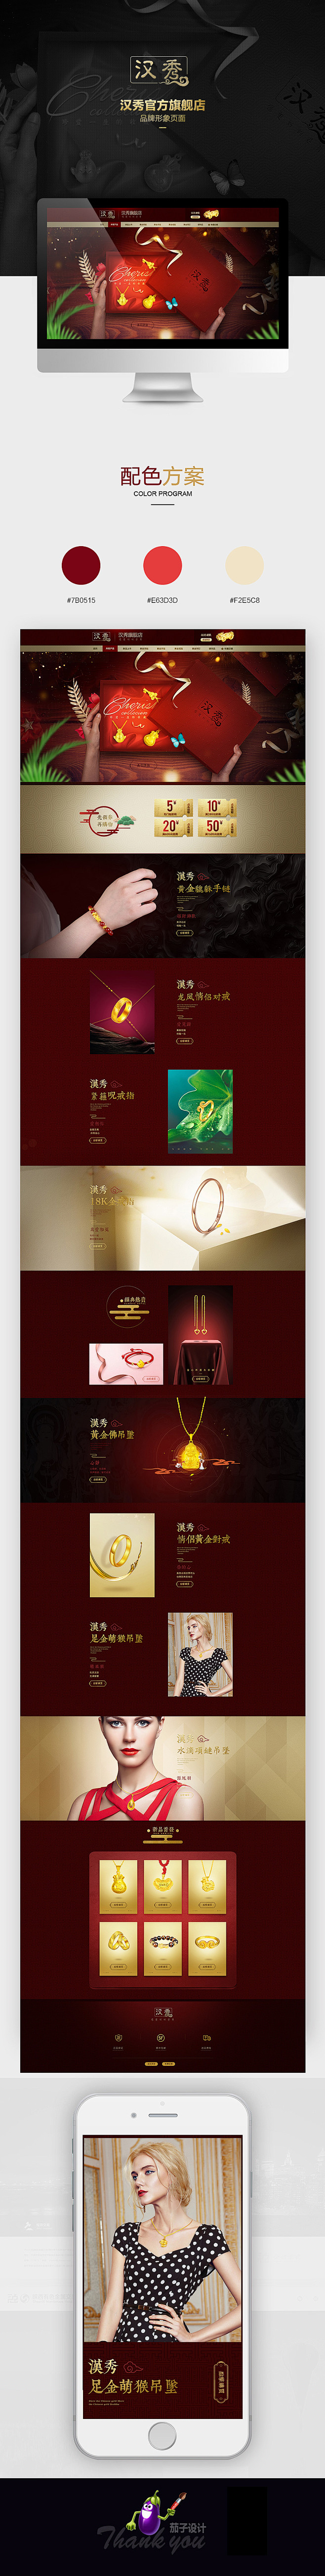 珠宝品牌形象页面设计_李晓敏_68视觉